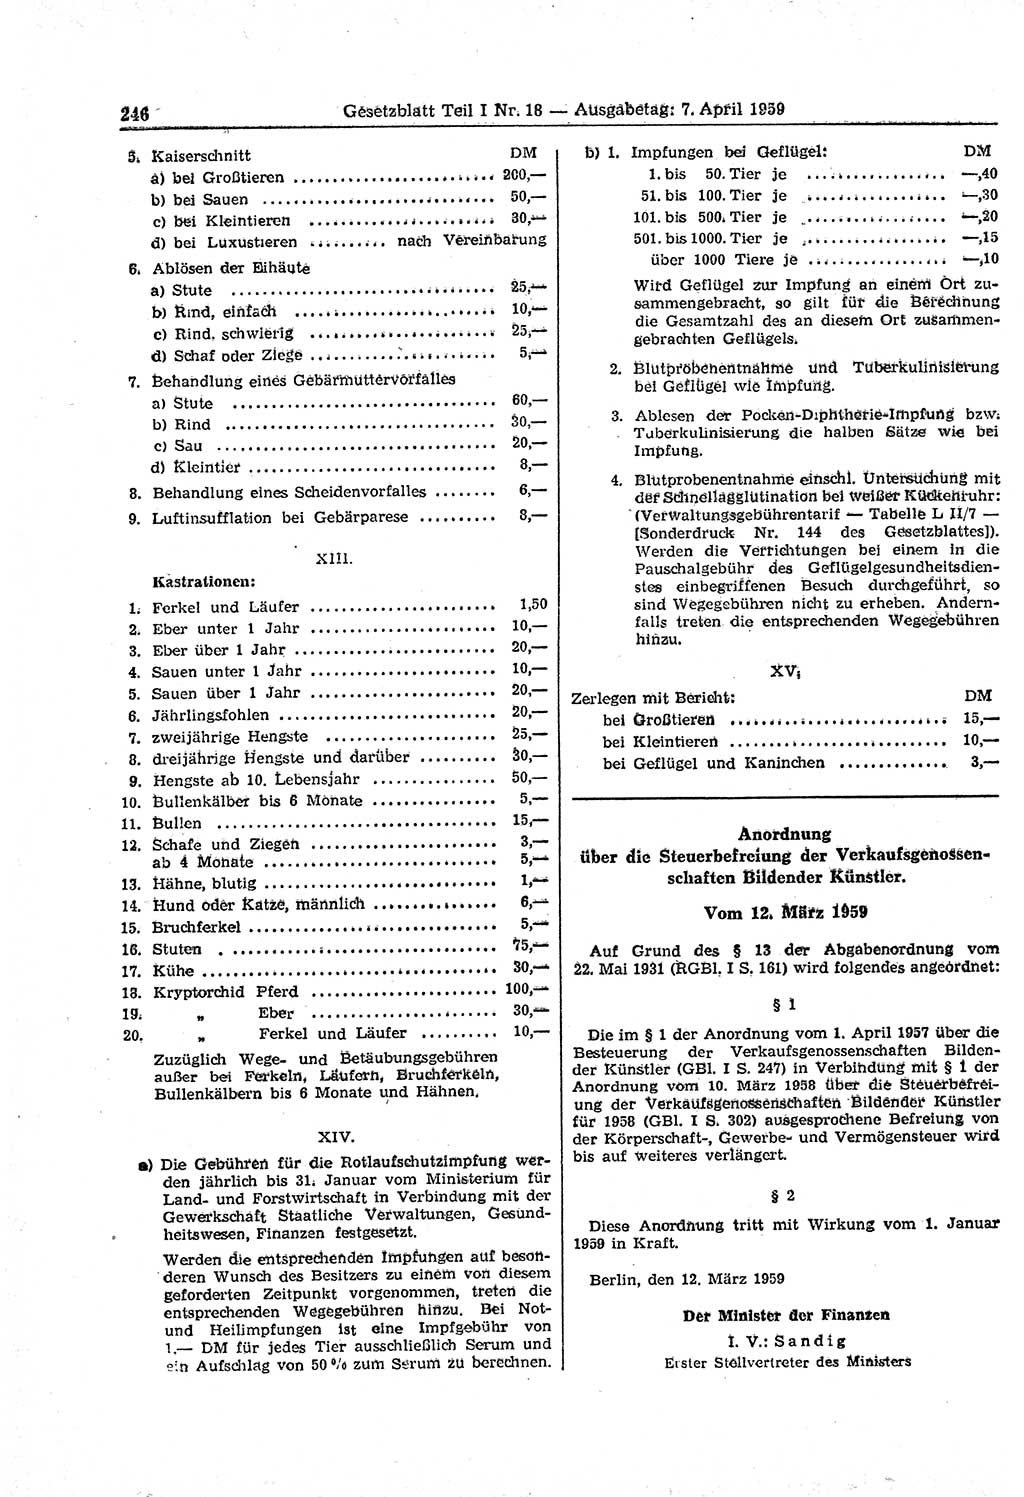 Gesetzblatt (GBl.) der Deutschen Demokratischen Republik (DDR) Teil Ⅰ 1959, Seite 246 (GBl. DDR Ⅰ 1959, S. 246)